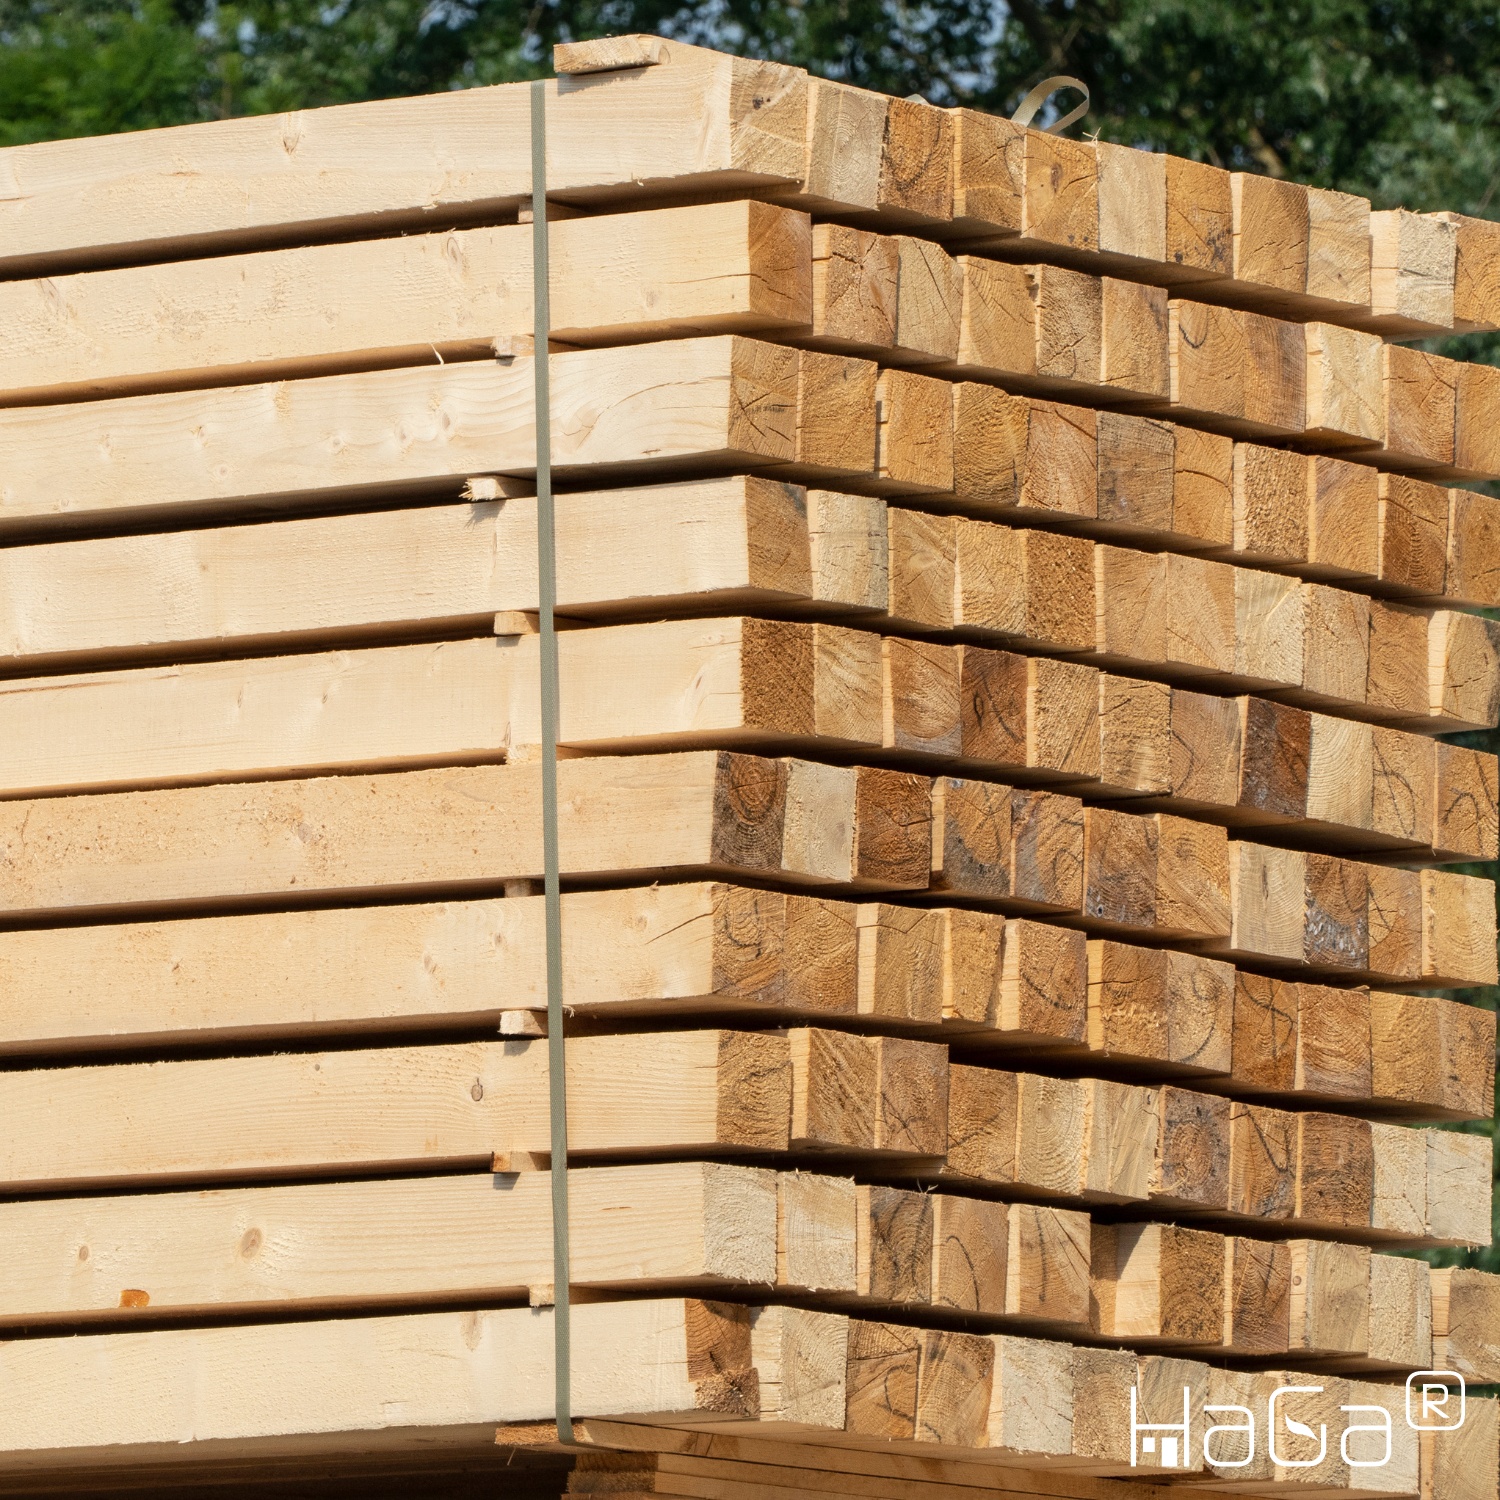 Holzpfosten 7cm x 7cm x 150cm KDI-grün Kantholz Pfosten für Gartenzaun